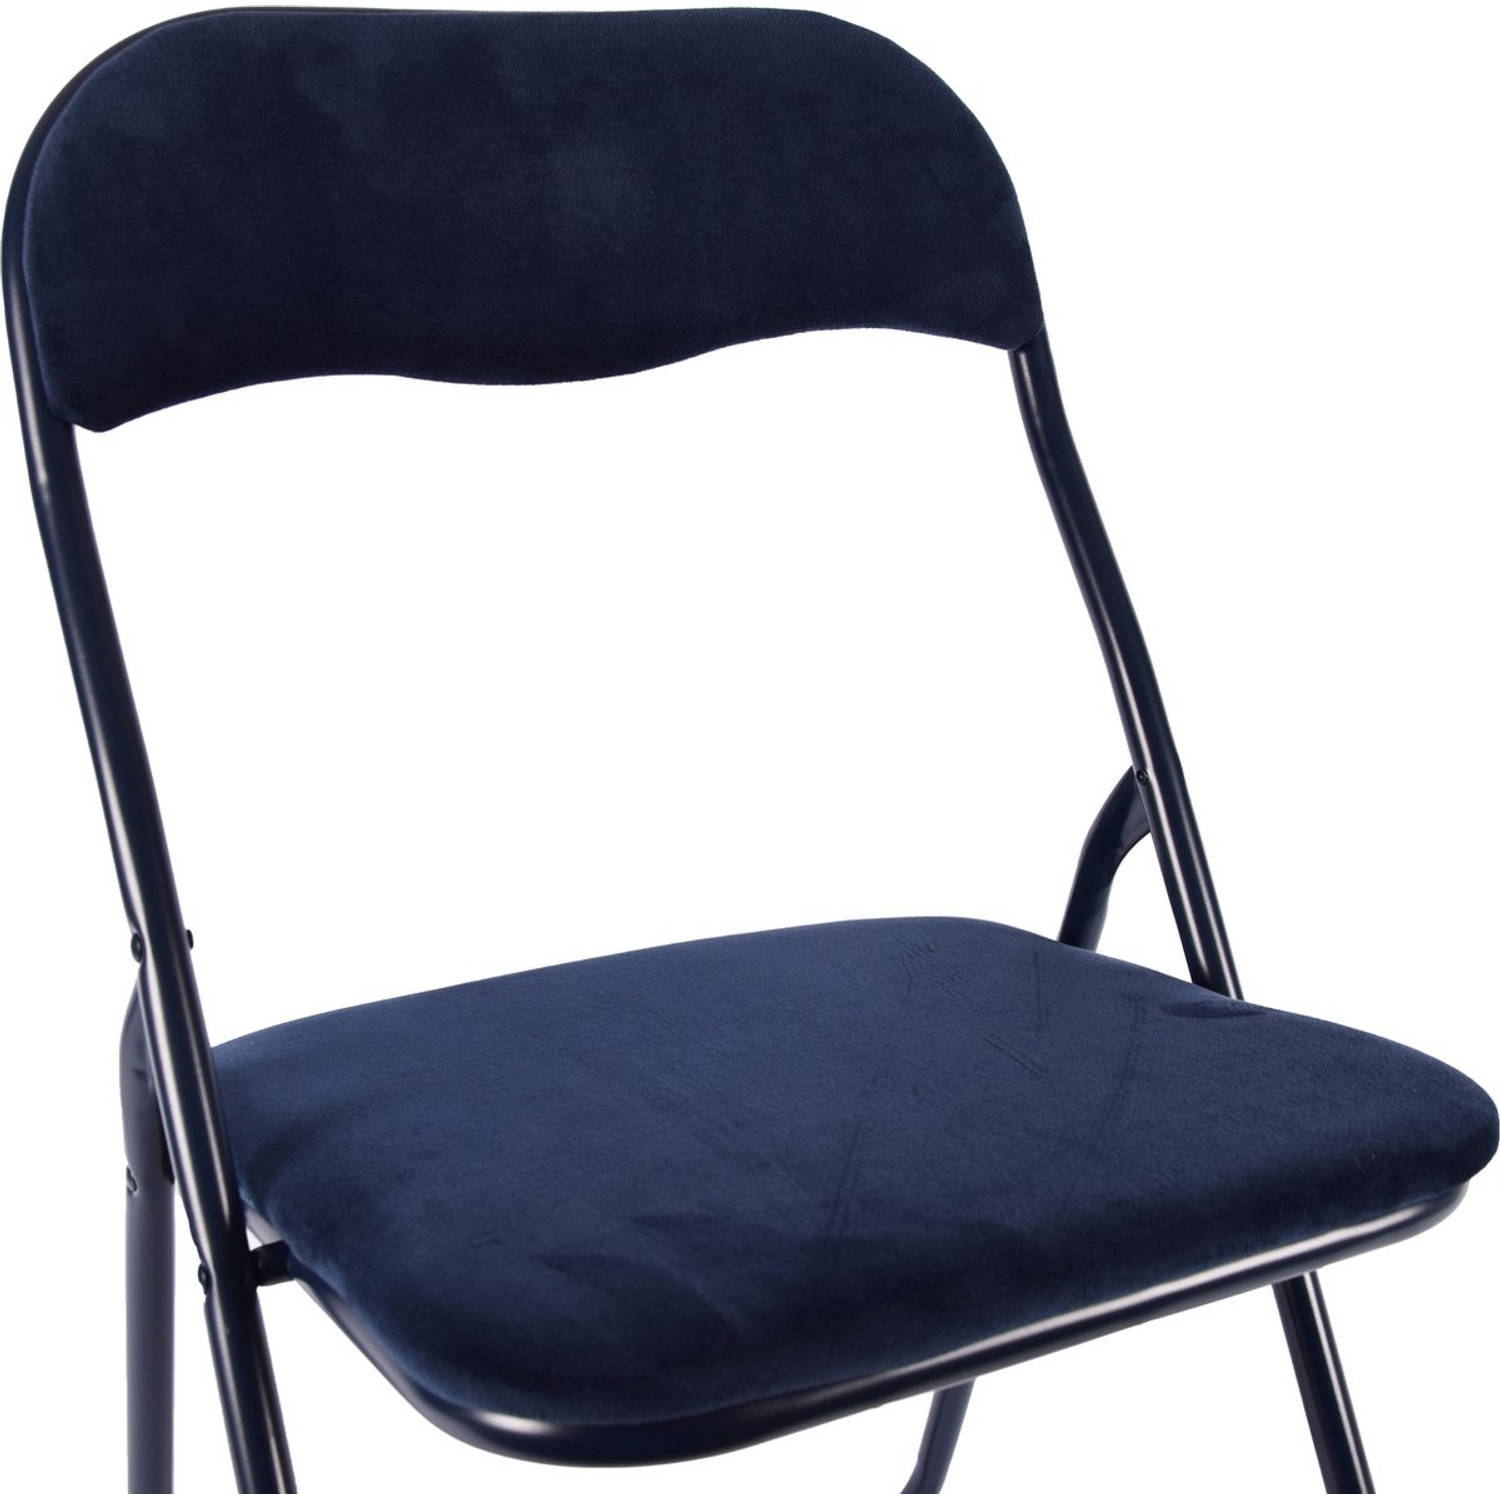 Klapstoel met zithoogte van 43 cml Vouwstoel velvet zitvlak en rug bekleed donkerblauw